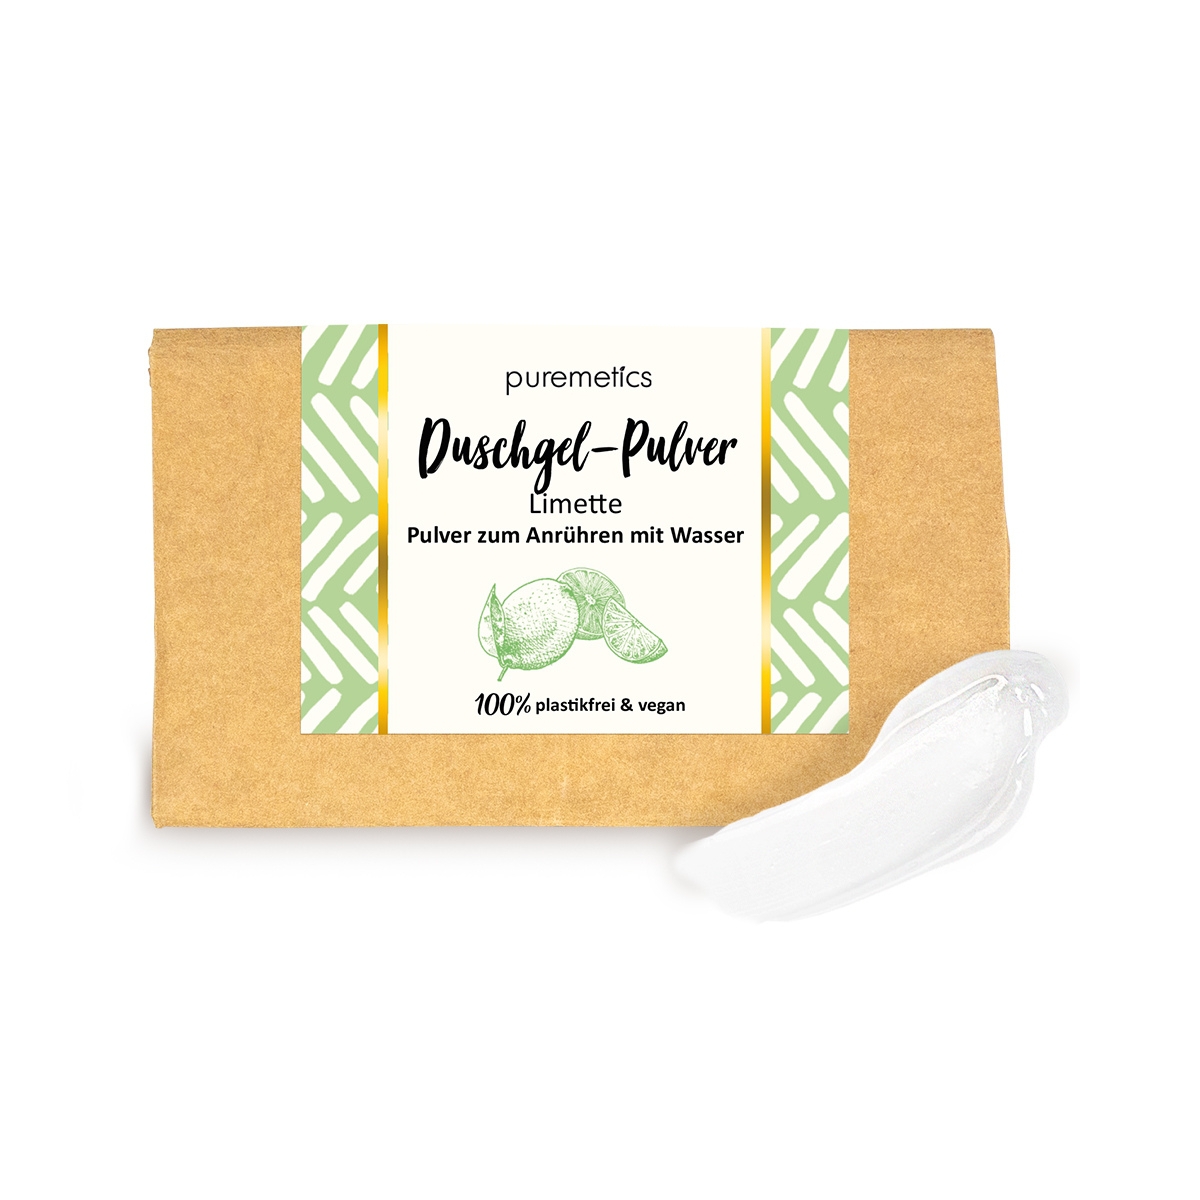 Duschgel-Pulver Limette